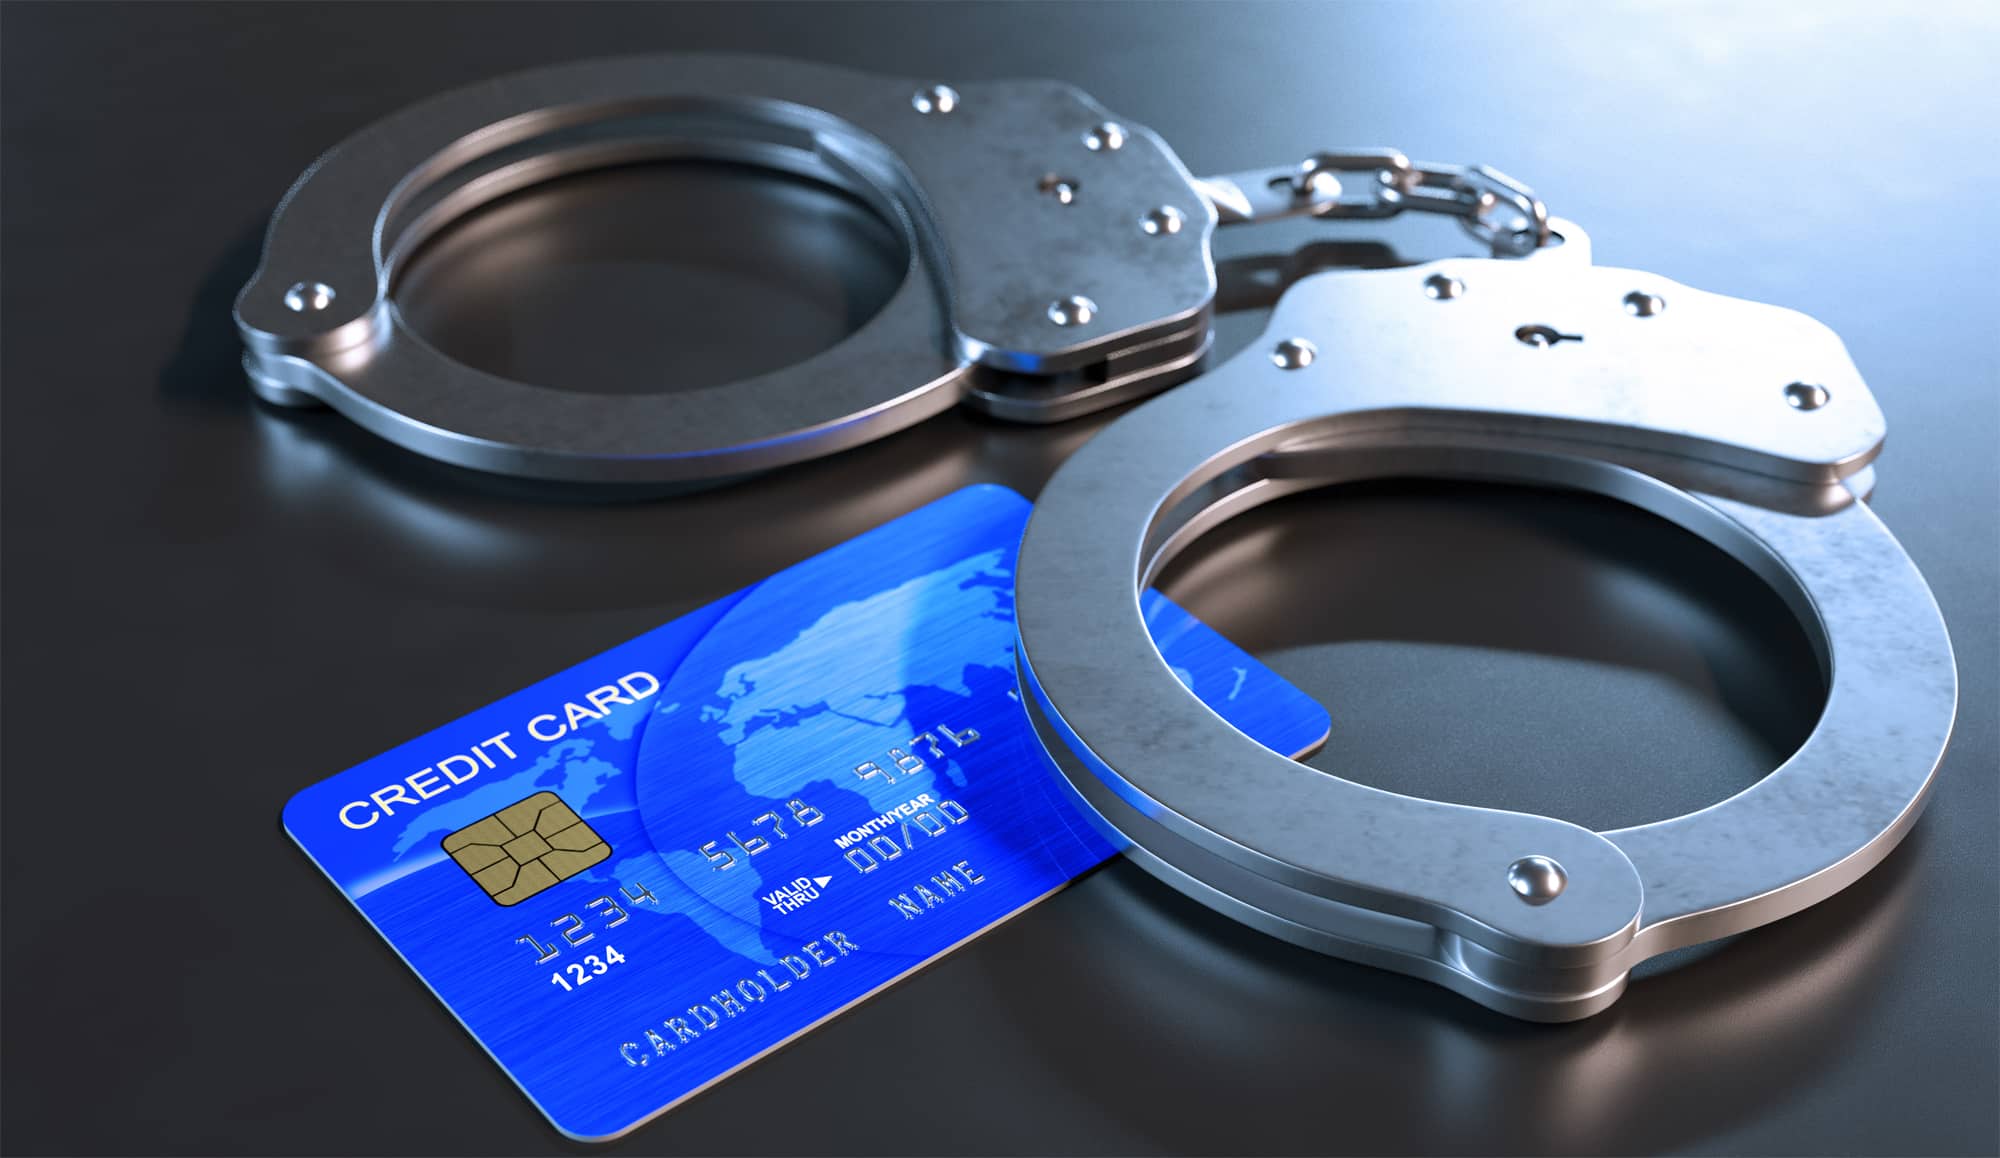 קבלת ערעור במחוזי בעבירות גניבה והונאה בכרטיסי אשראי